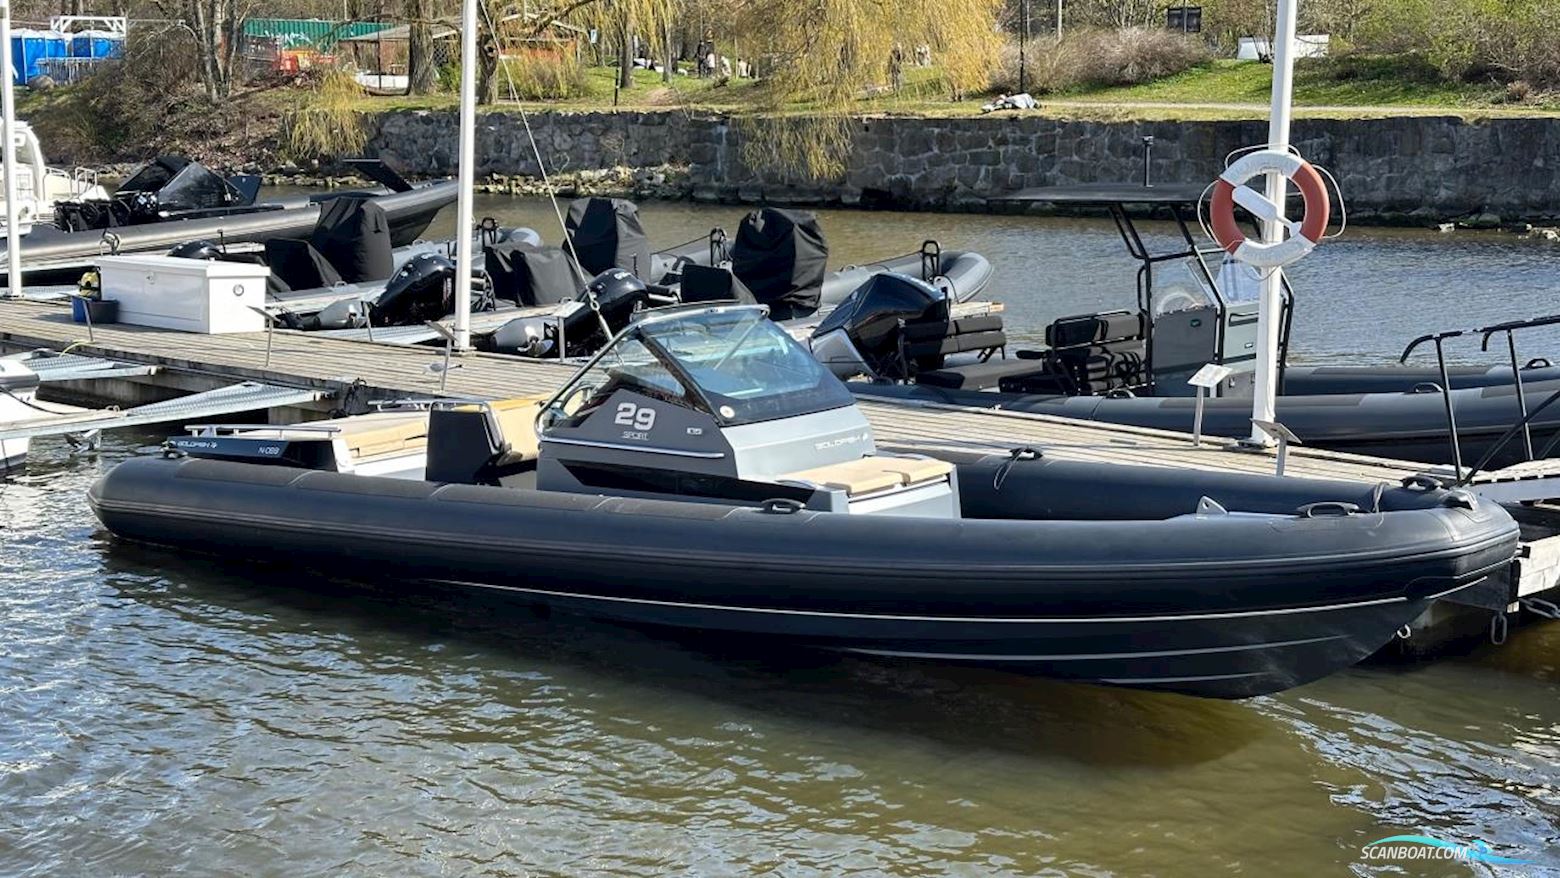 Goldfish 29 Sport Motorbåd 2020, med Mercruiser motor, Sverige